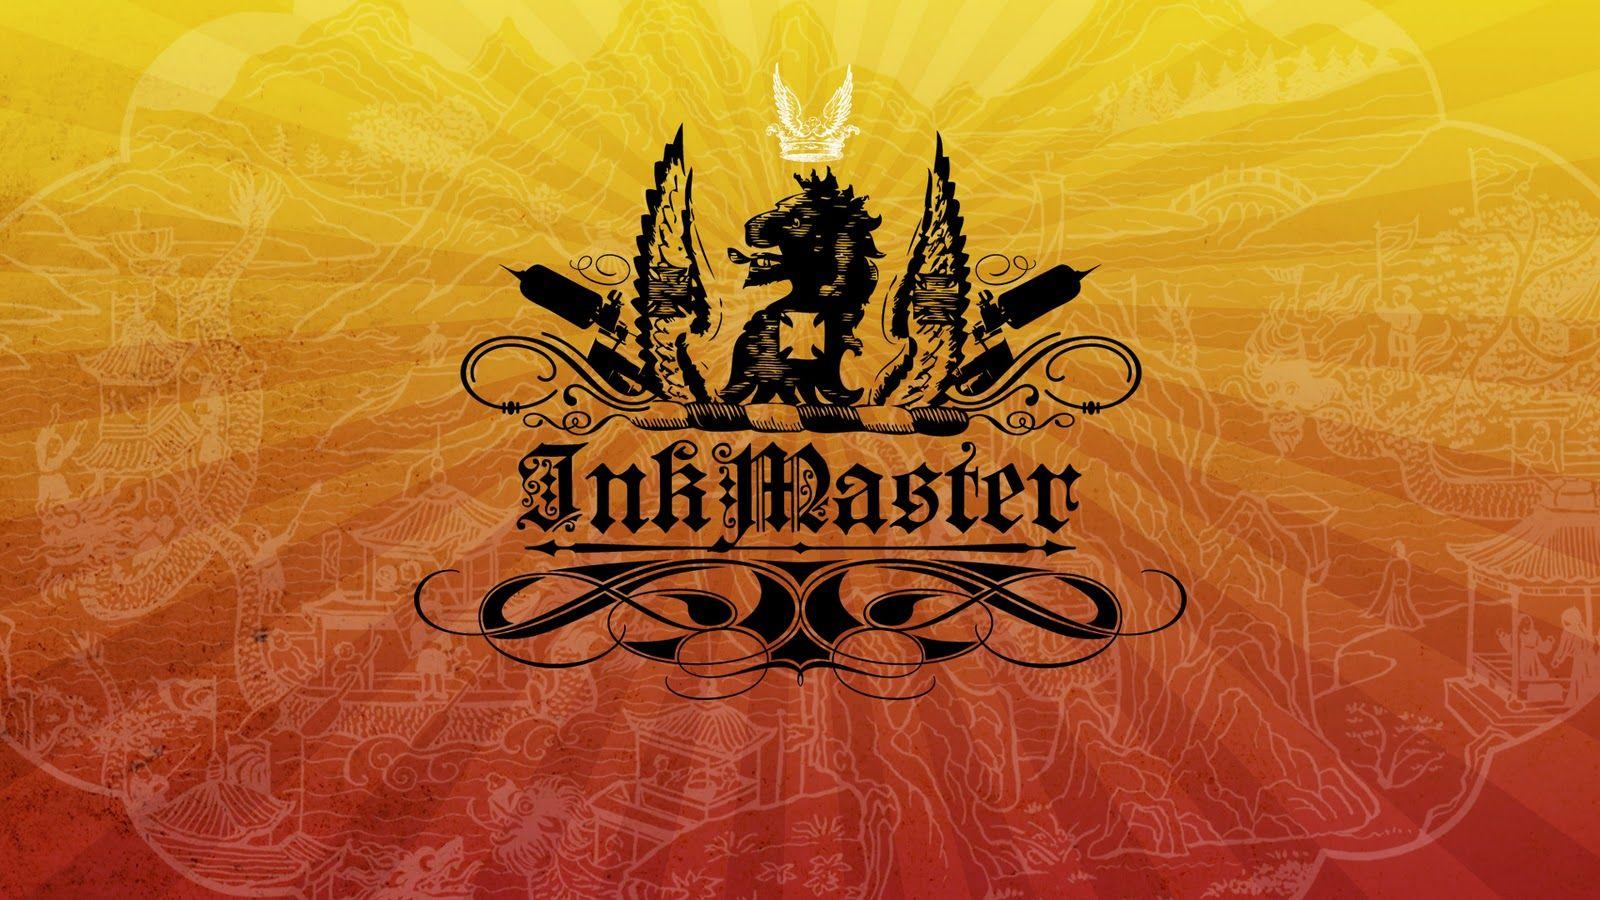 Ink Master Logo - Inkmaster - Style Frames. Lin Wilde Design